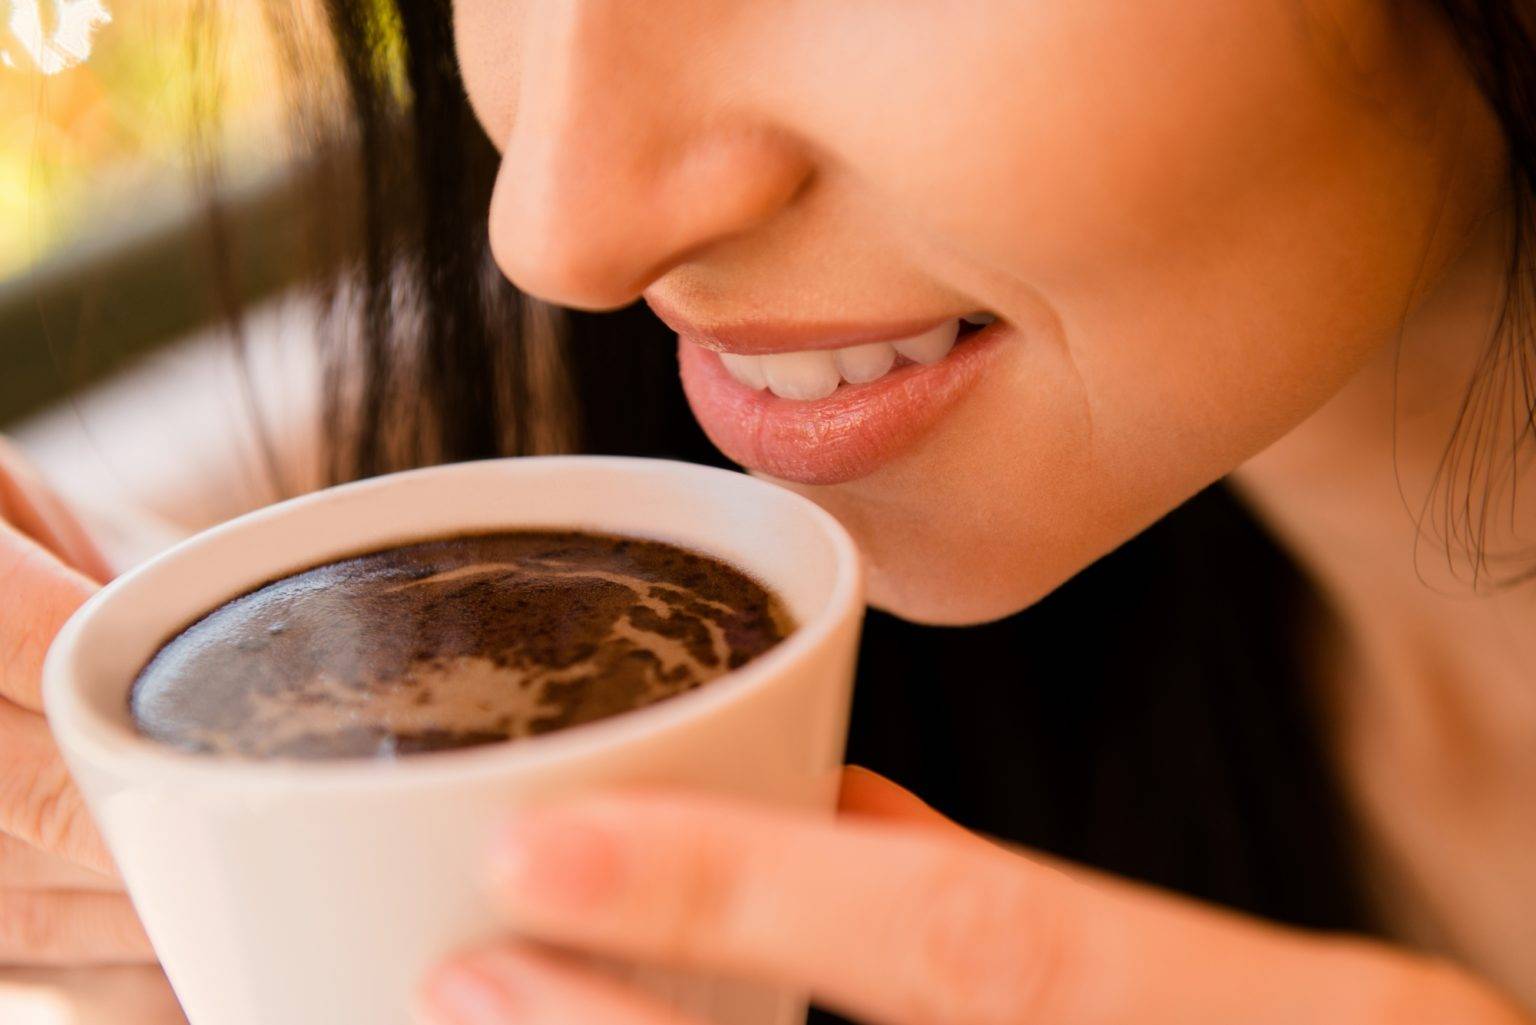 Пятна, налет от кофе на зубах: как отбелить? как пить кофе, чтобы зубы не желтели?